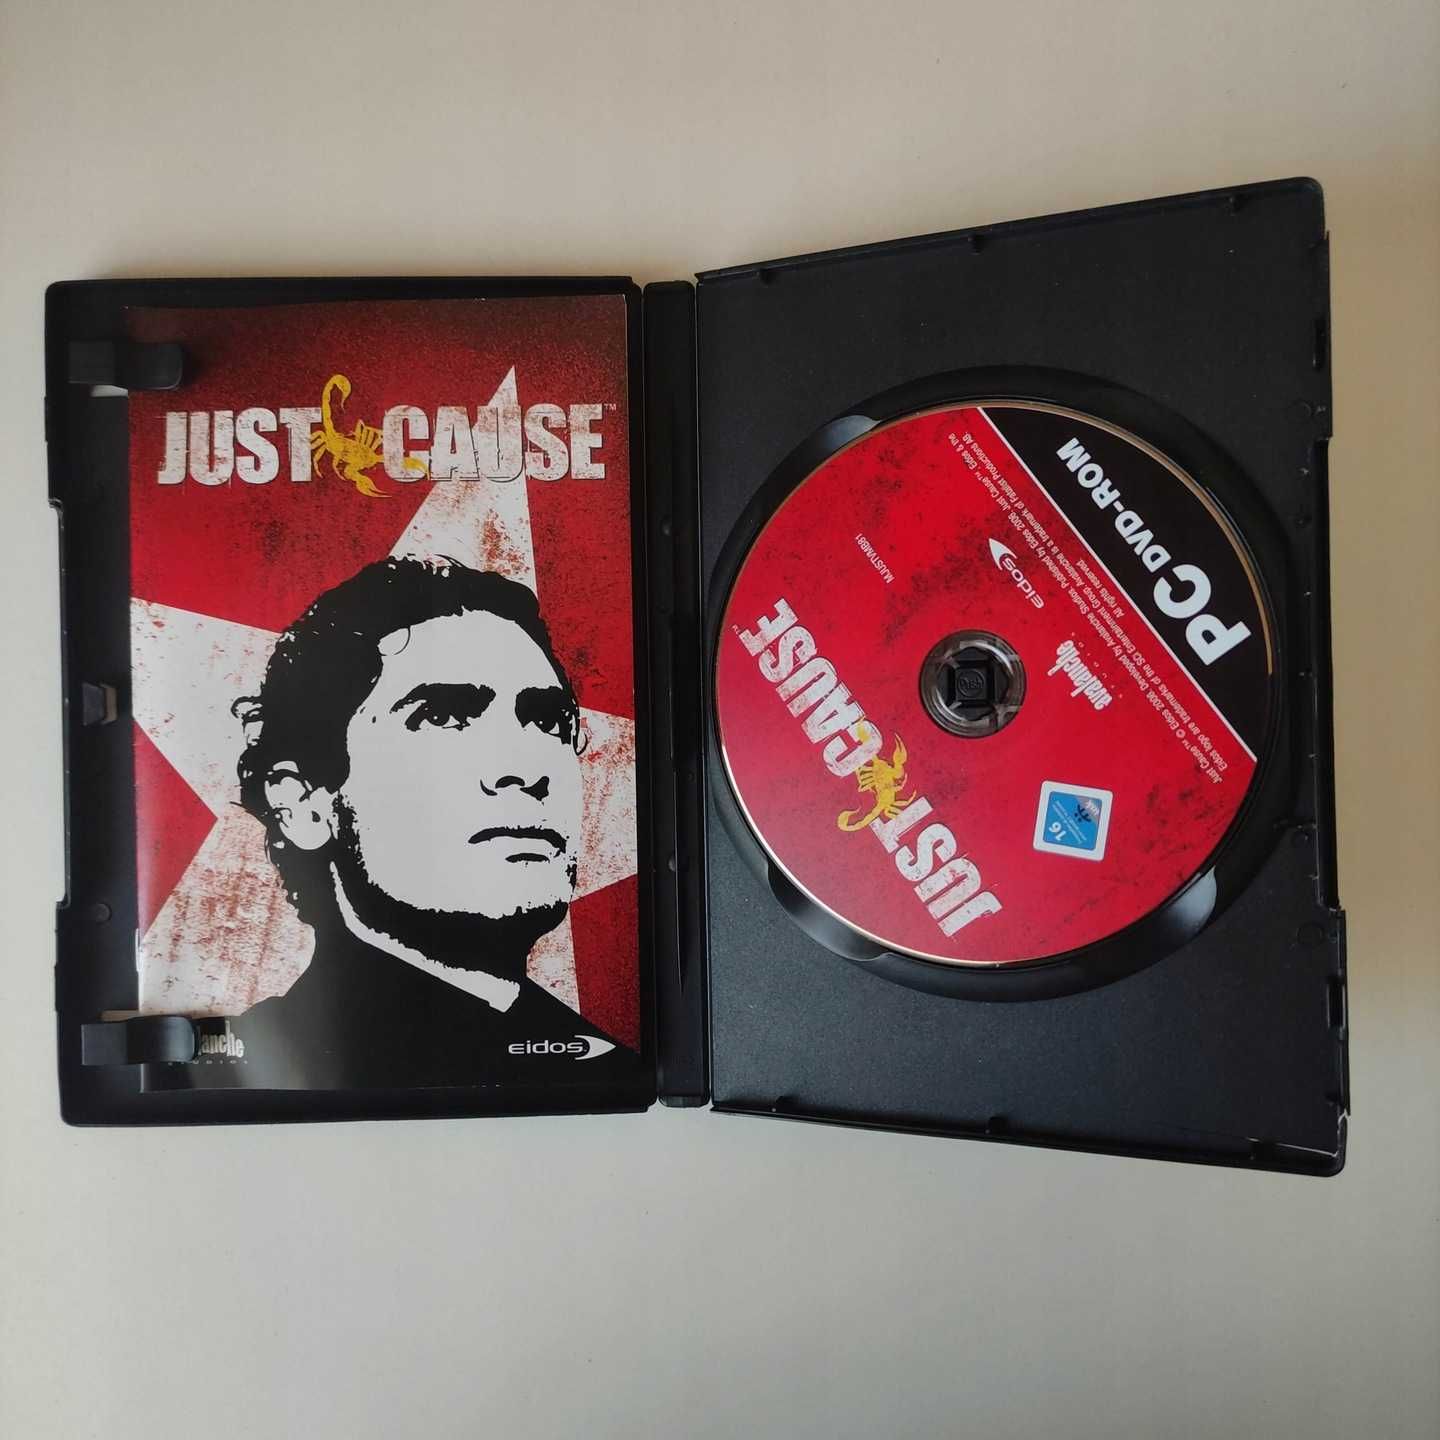 Just Cause - Niemieckie wydanie gry PC